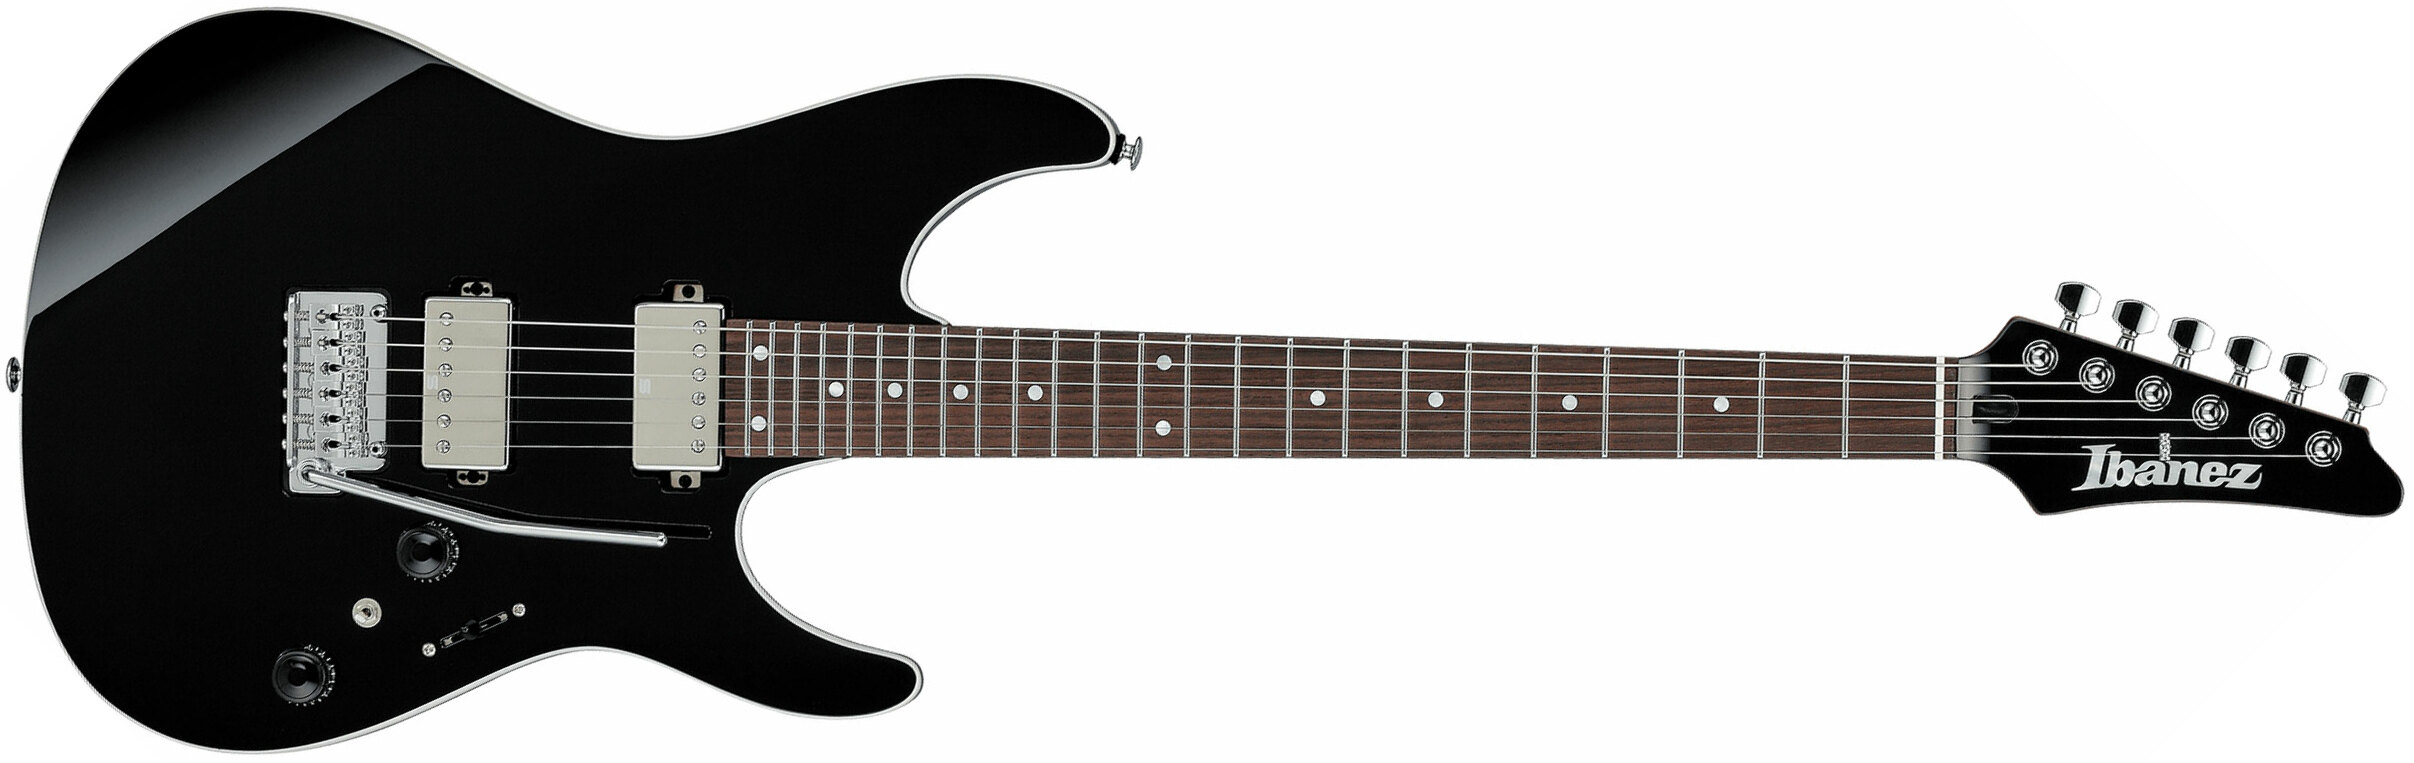 Ibanez Az42p1 Bk  Premium 2h Seymour Duncan Trem Rw - Black - E-Gitarre in Str-Form - Main picture